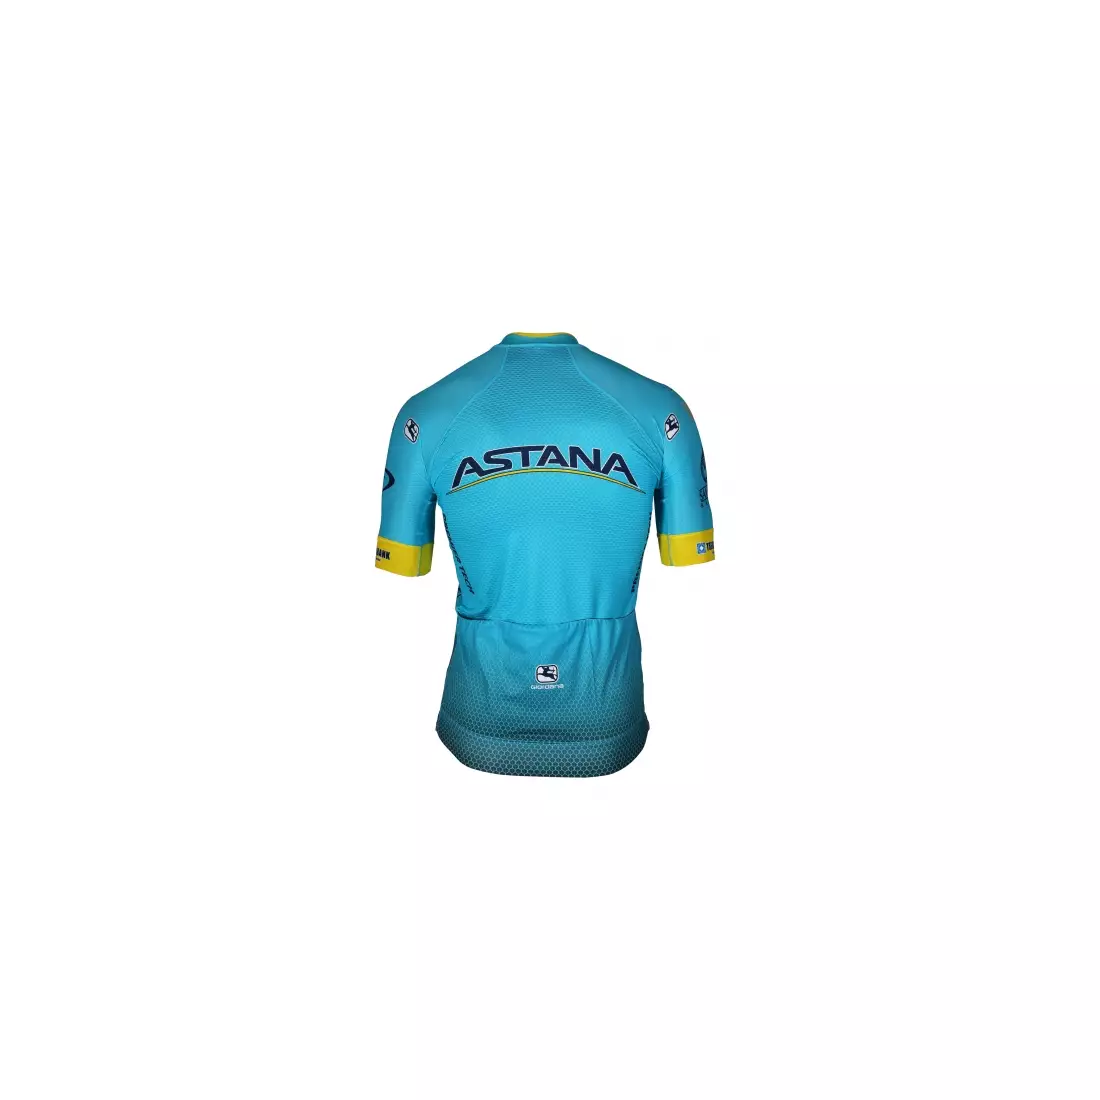 GIORDANA VERO PRO TEAM ASTANA 2018 cycling jersey